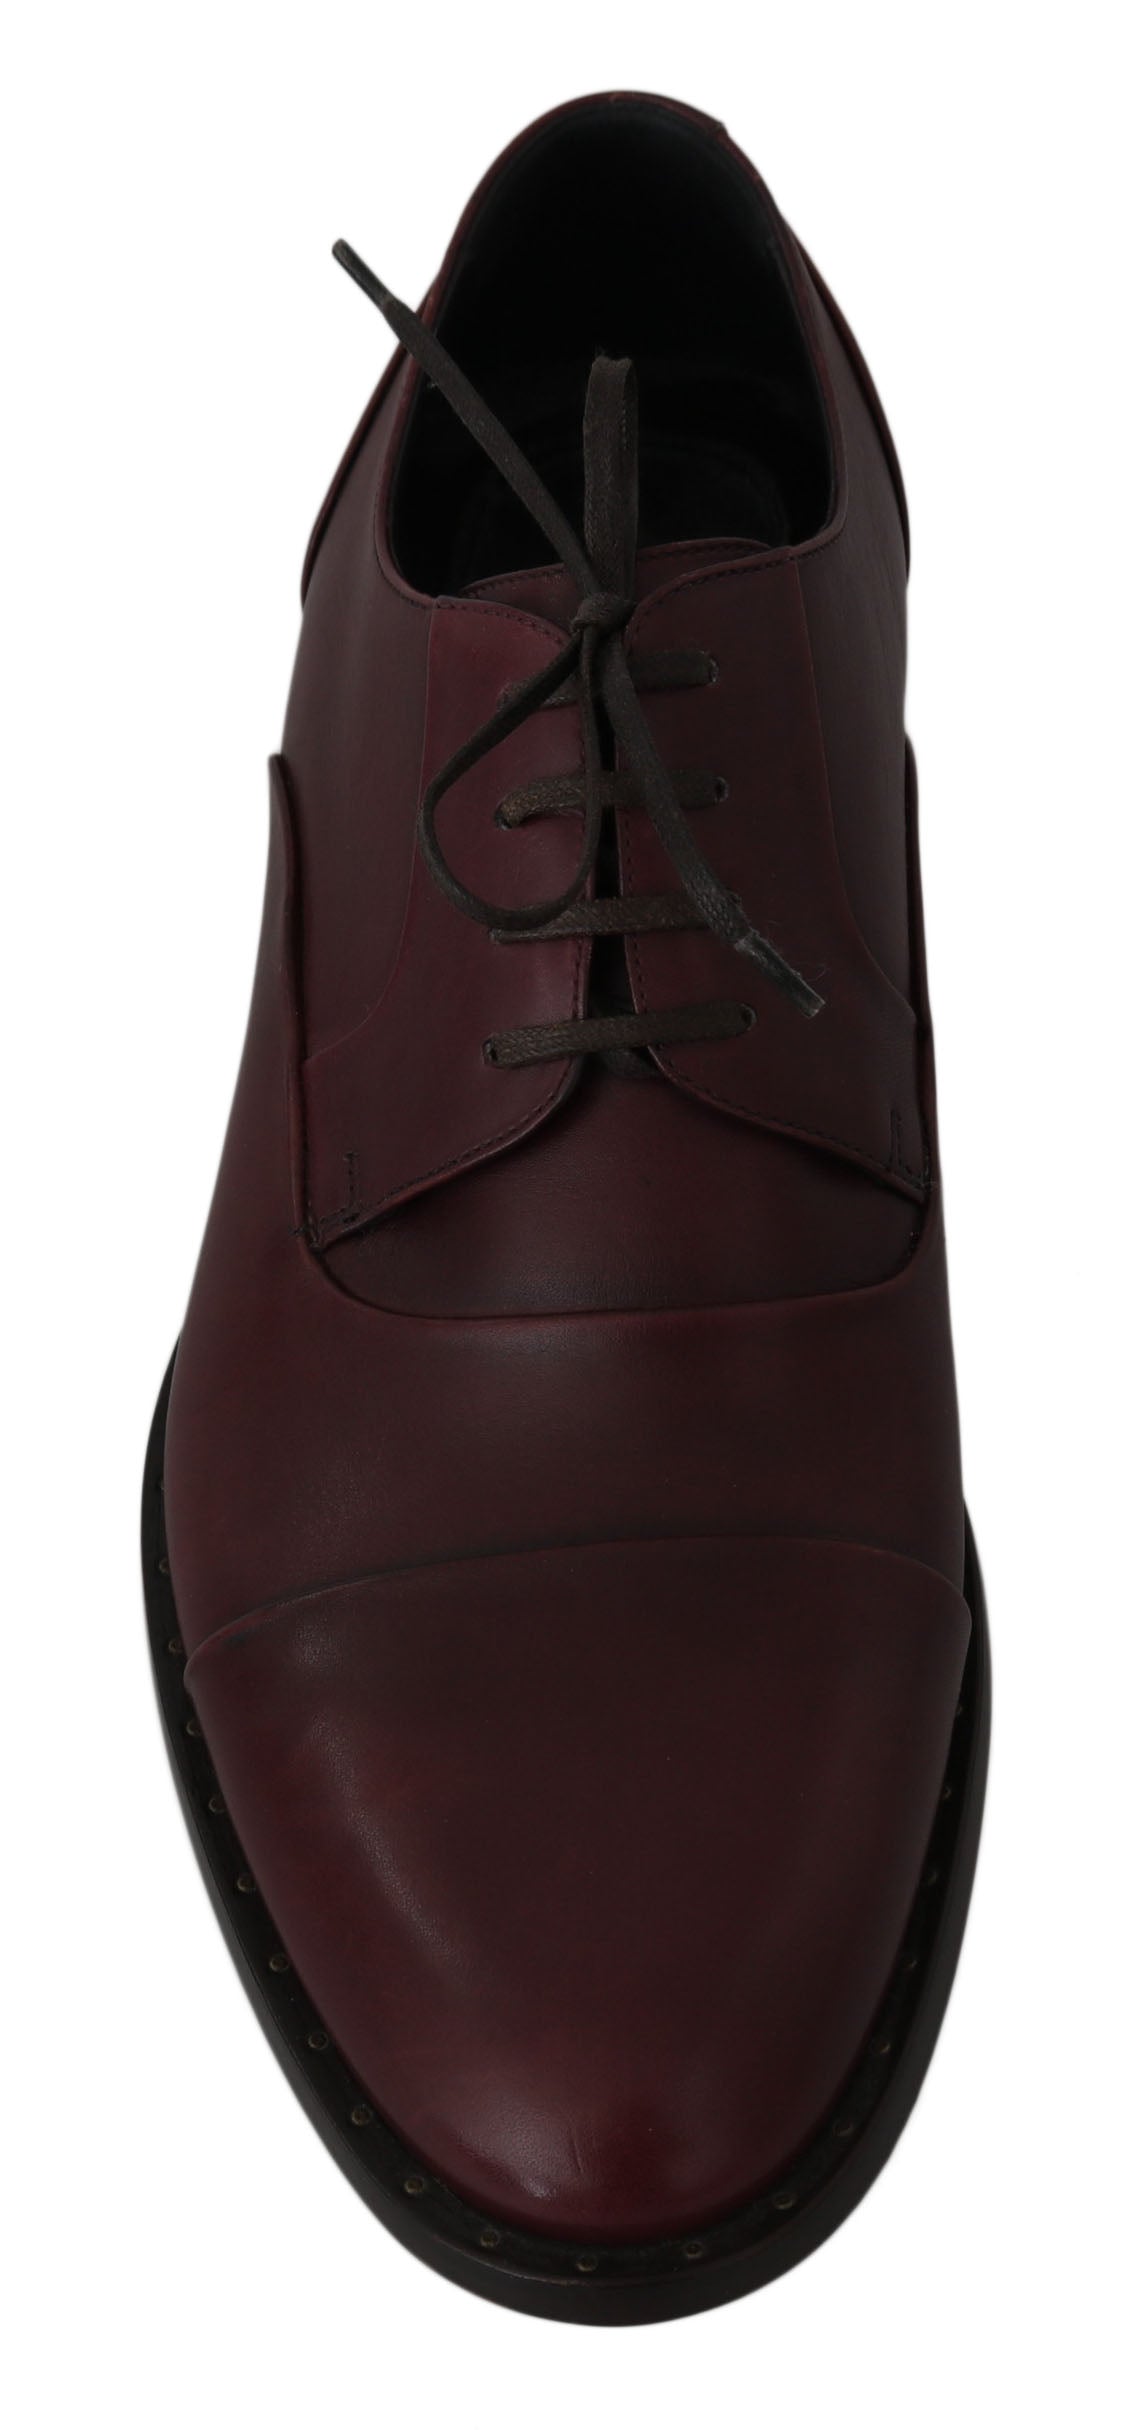 Dolce & Gabbana Elegant Bordeaux Leather Dress Shoes